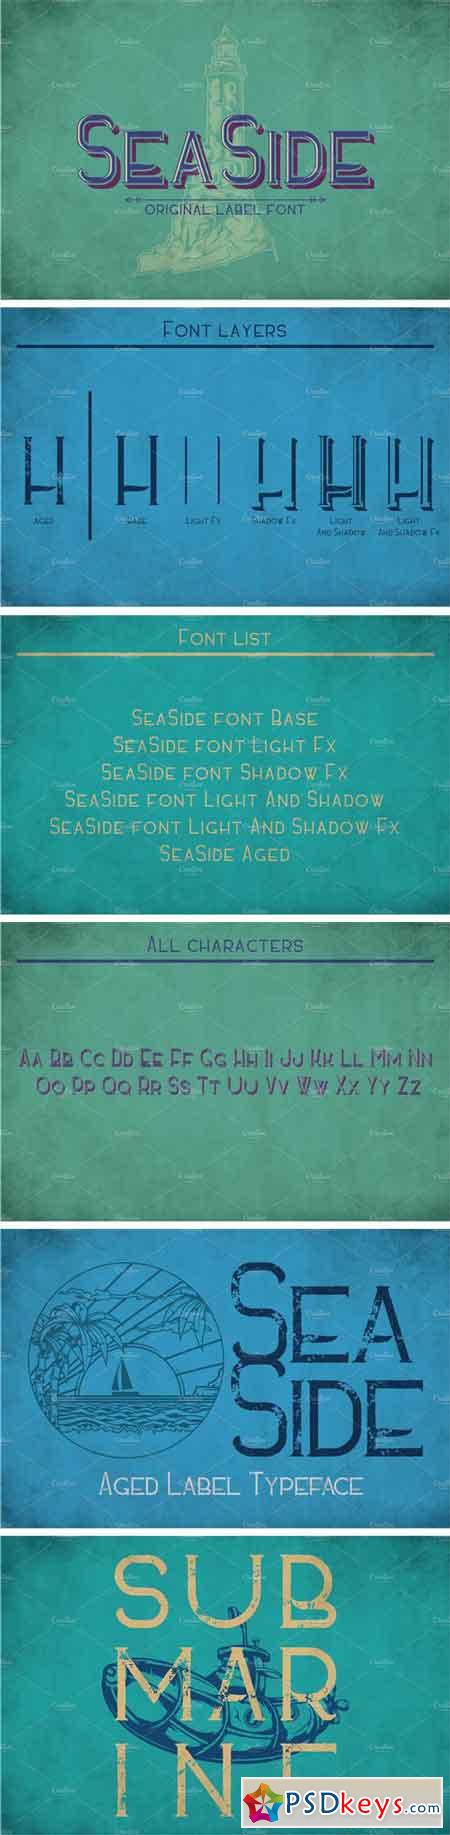 Sea Side Vintage Label Typeface 1952490